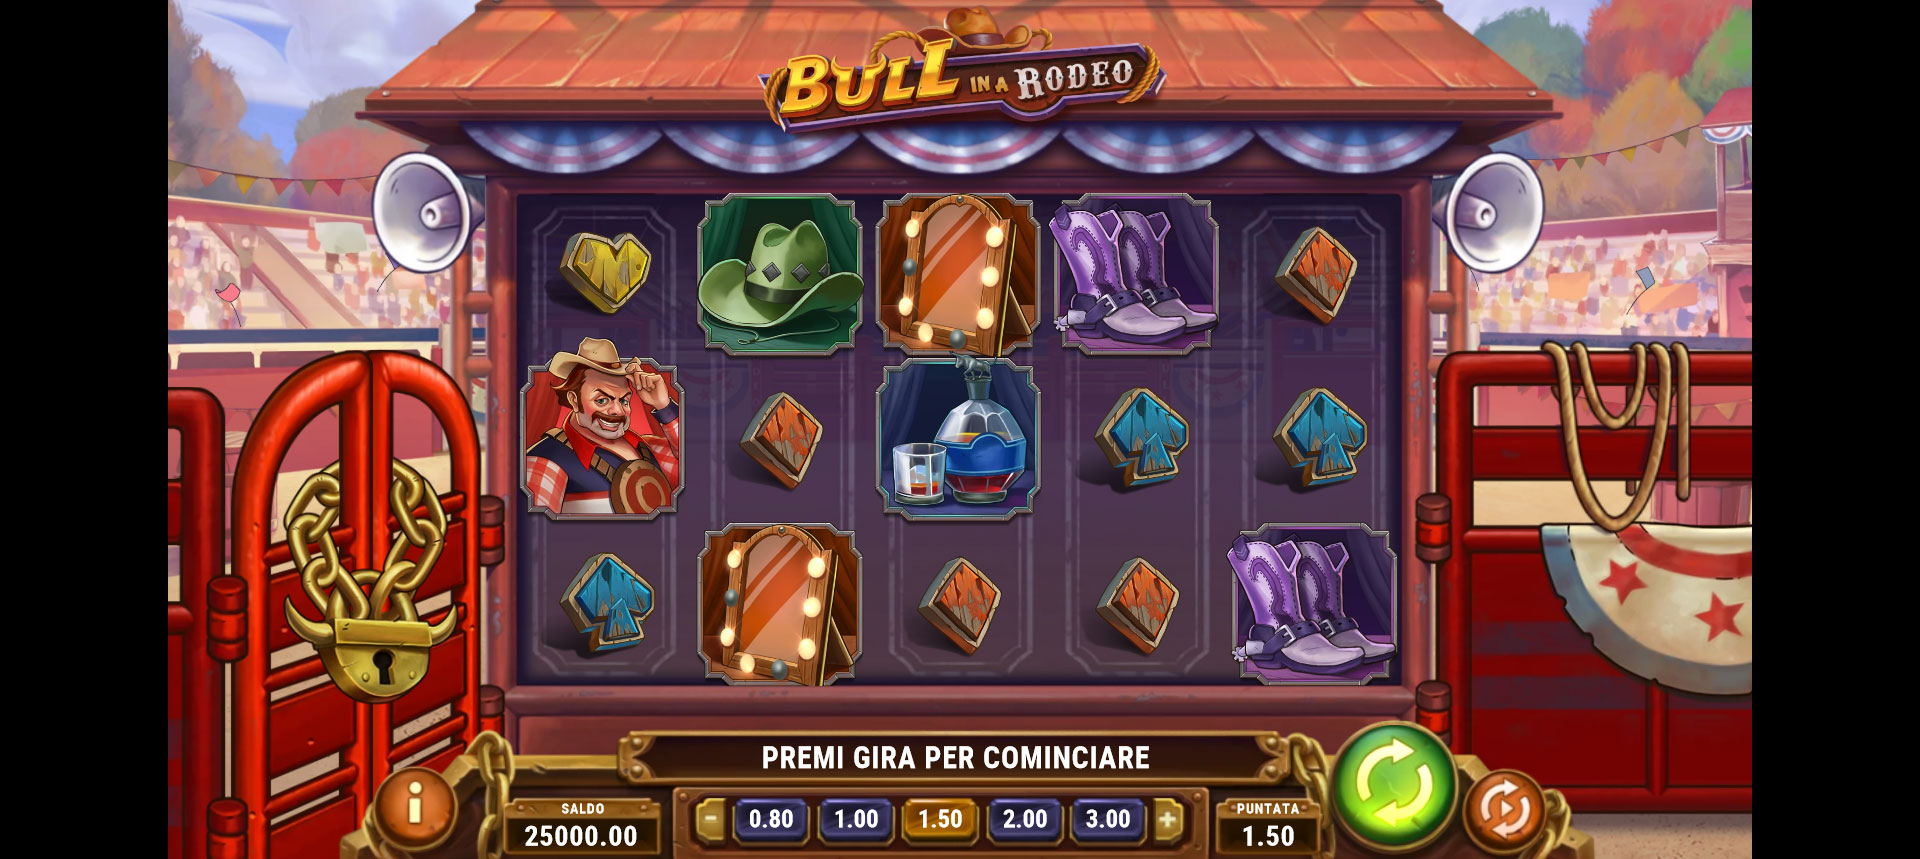 griglia del gioco slot machine bull in a rodeo